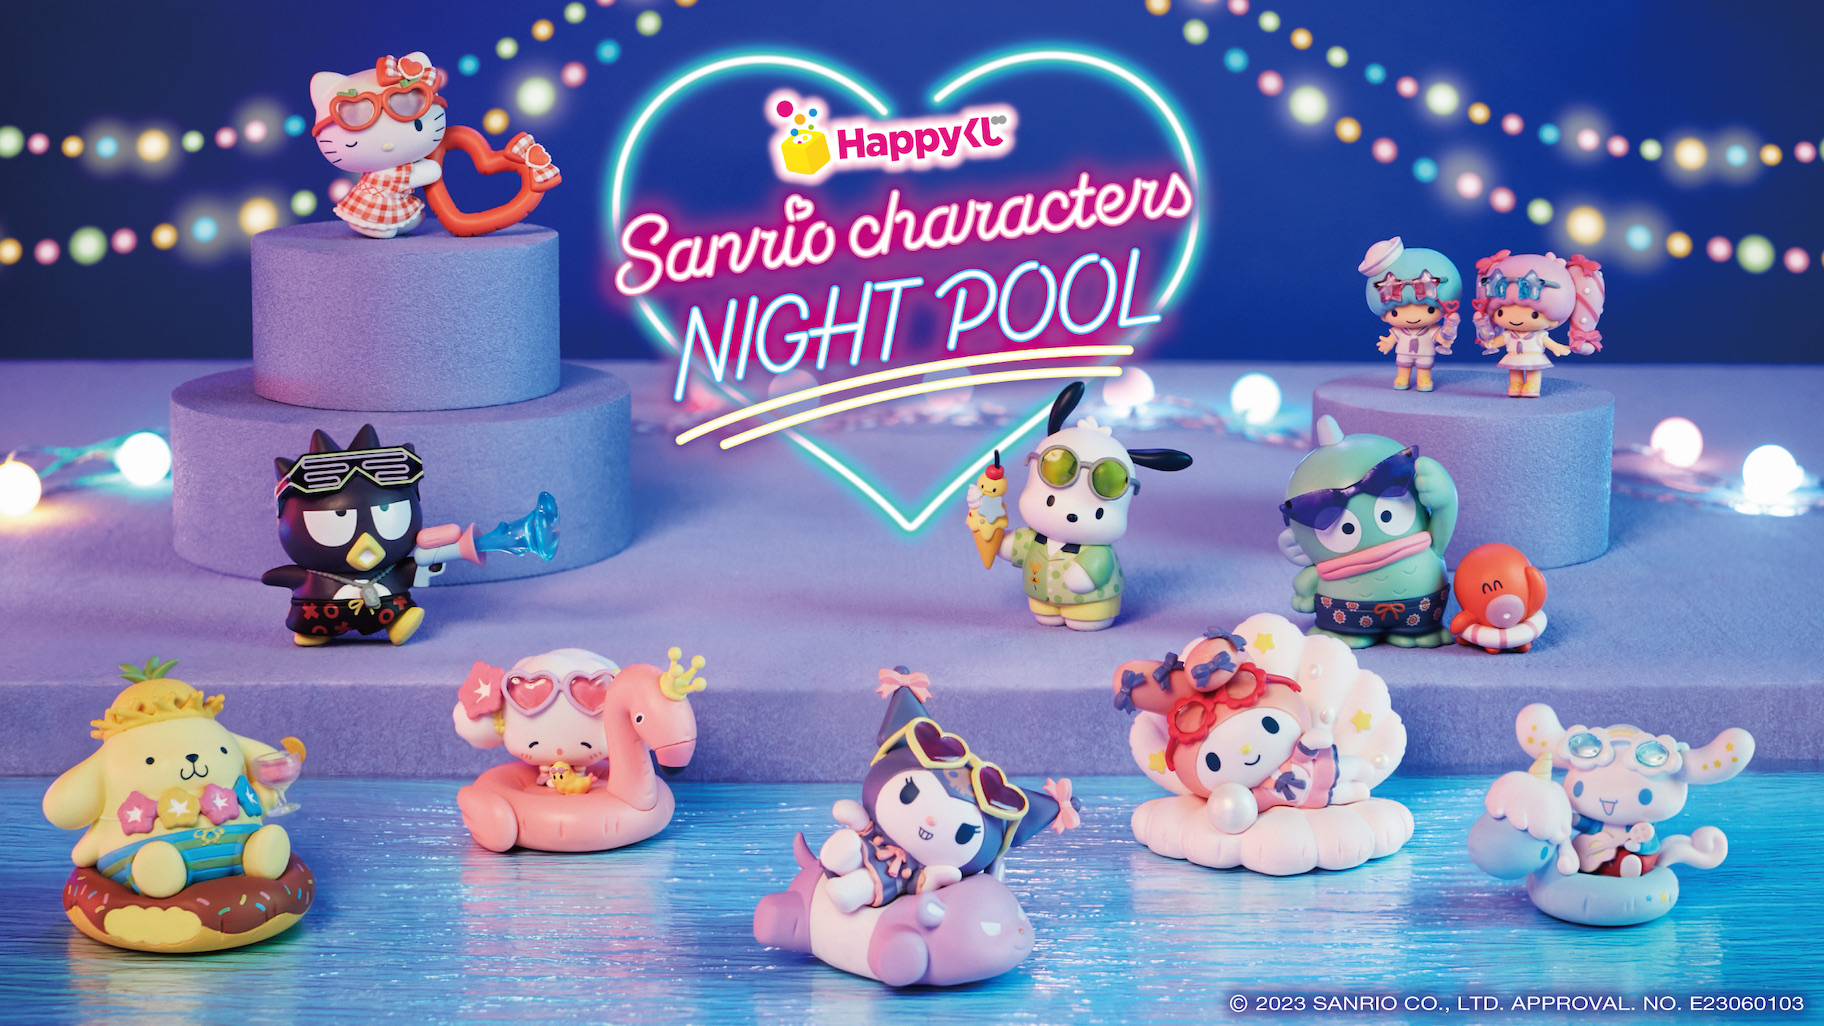 ハズレなしのHappyくじに「Sanrio characters NIGHTPOOL」が登場 